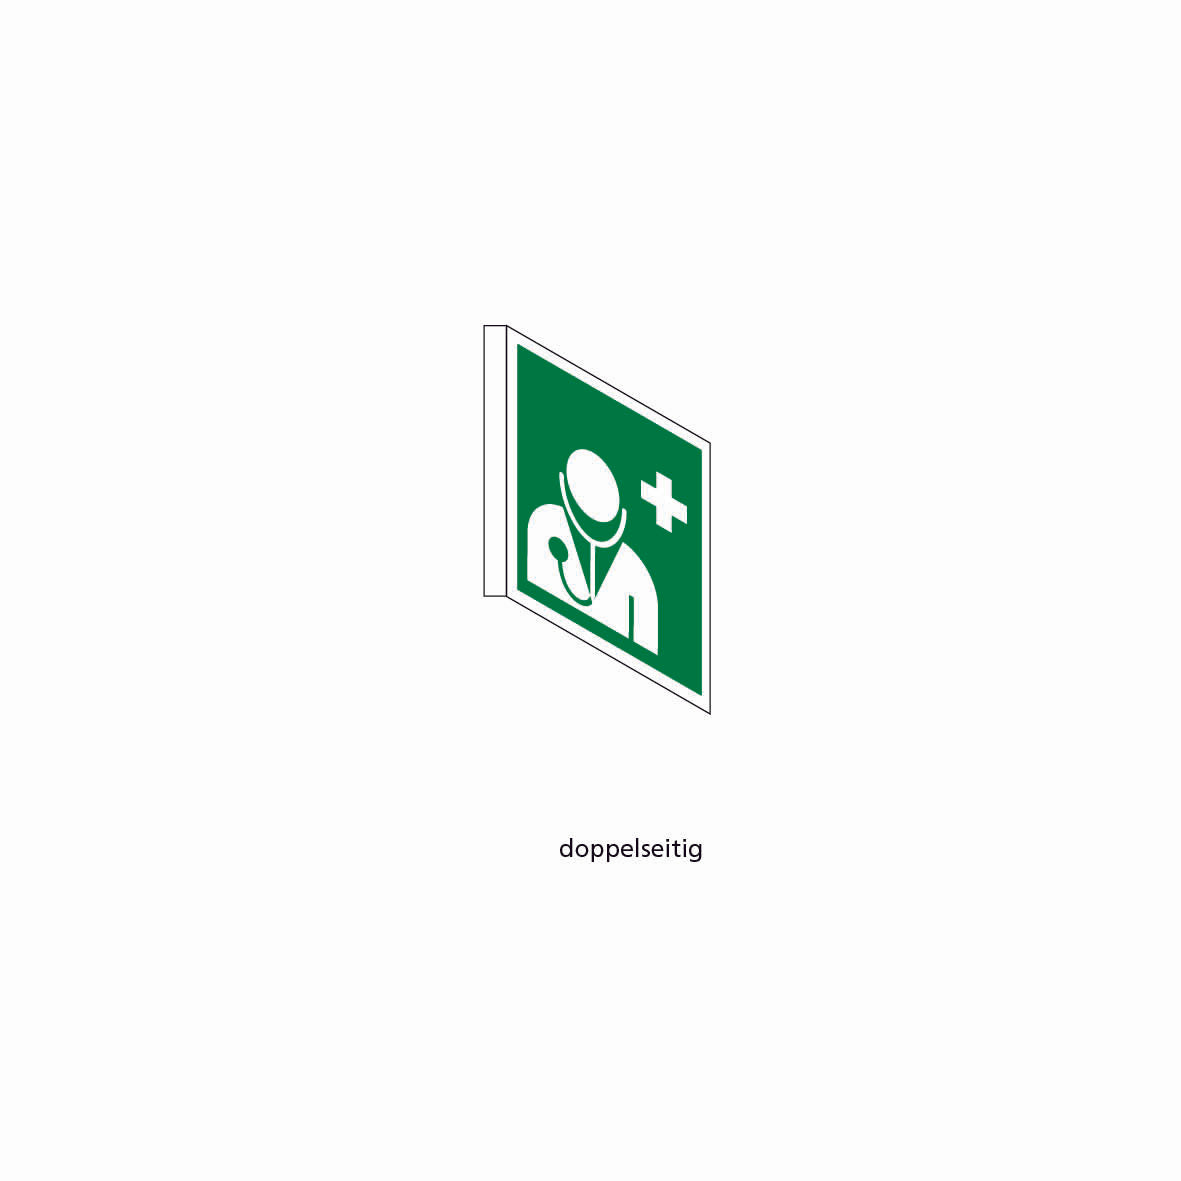 Fahnenschild doppelseitig, Rettungs- und Brandschutzzeichen, KU, 300 x 300 mm, gemäss Logobibliothek